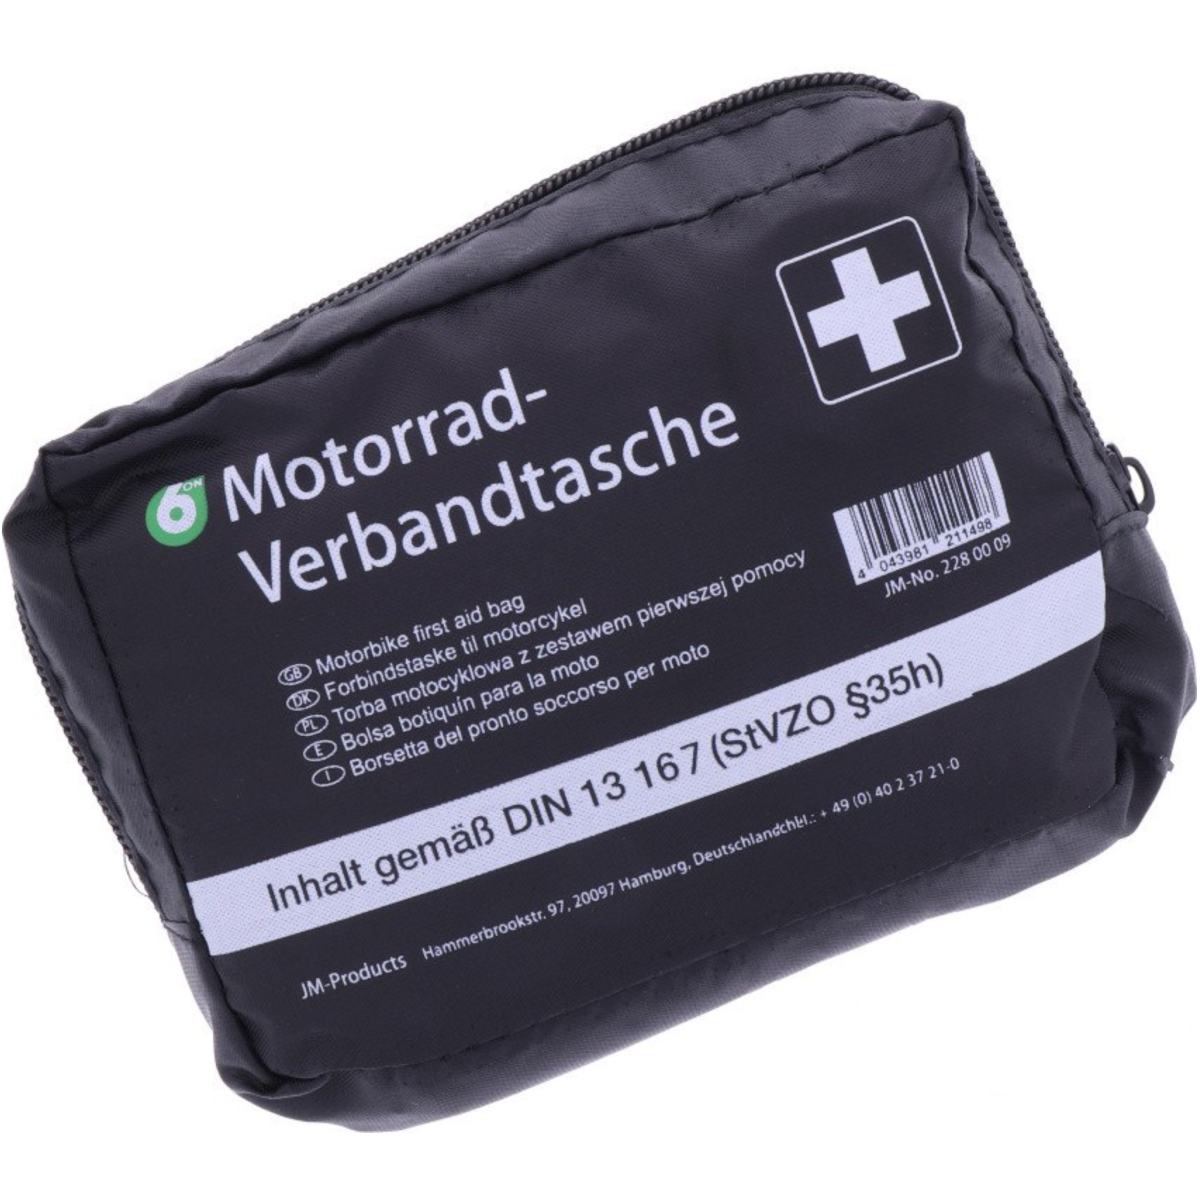 6-on first aid bag motorc verbandtasche din13167 von 6-ON